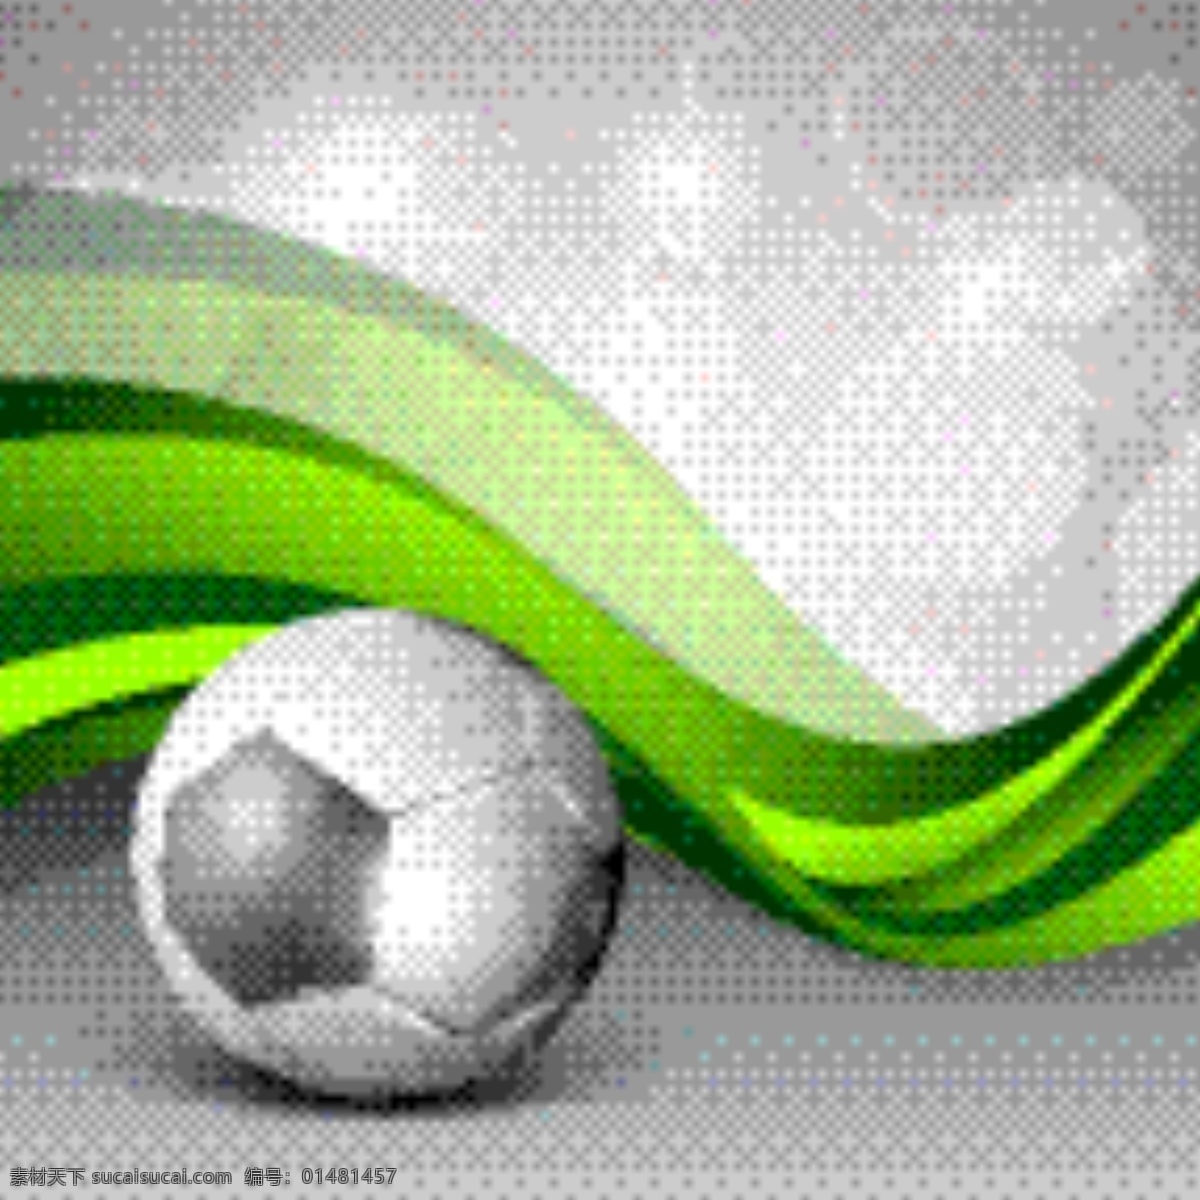 一个 闪闪 发光 sccor 足球 创意 摘要 绿色 浪潮 背景 说明 矢量图 日常生活